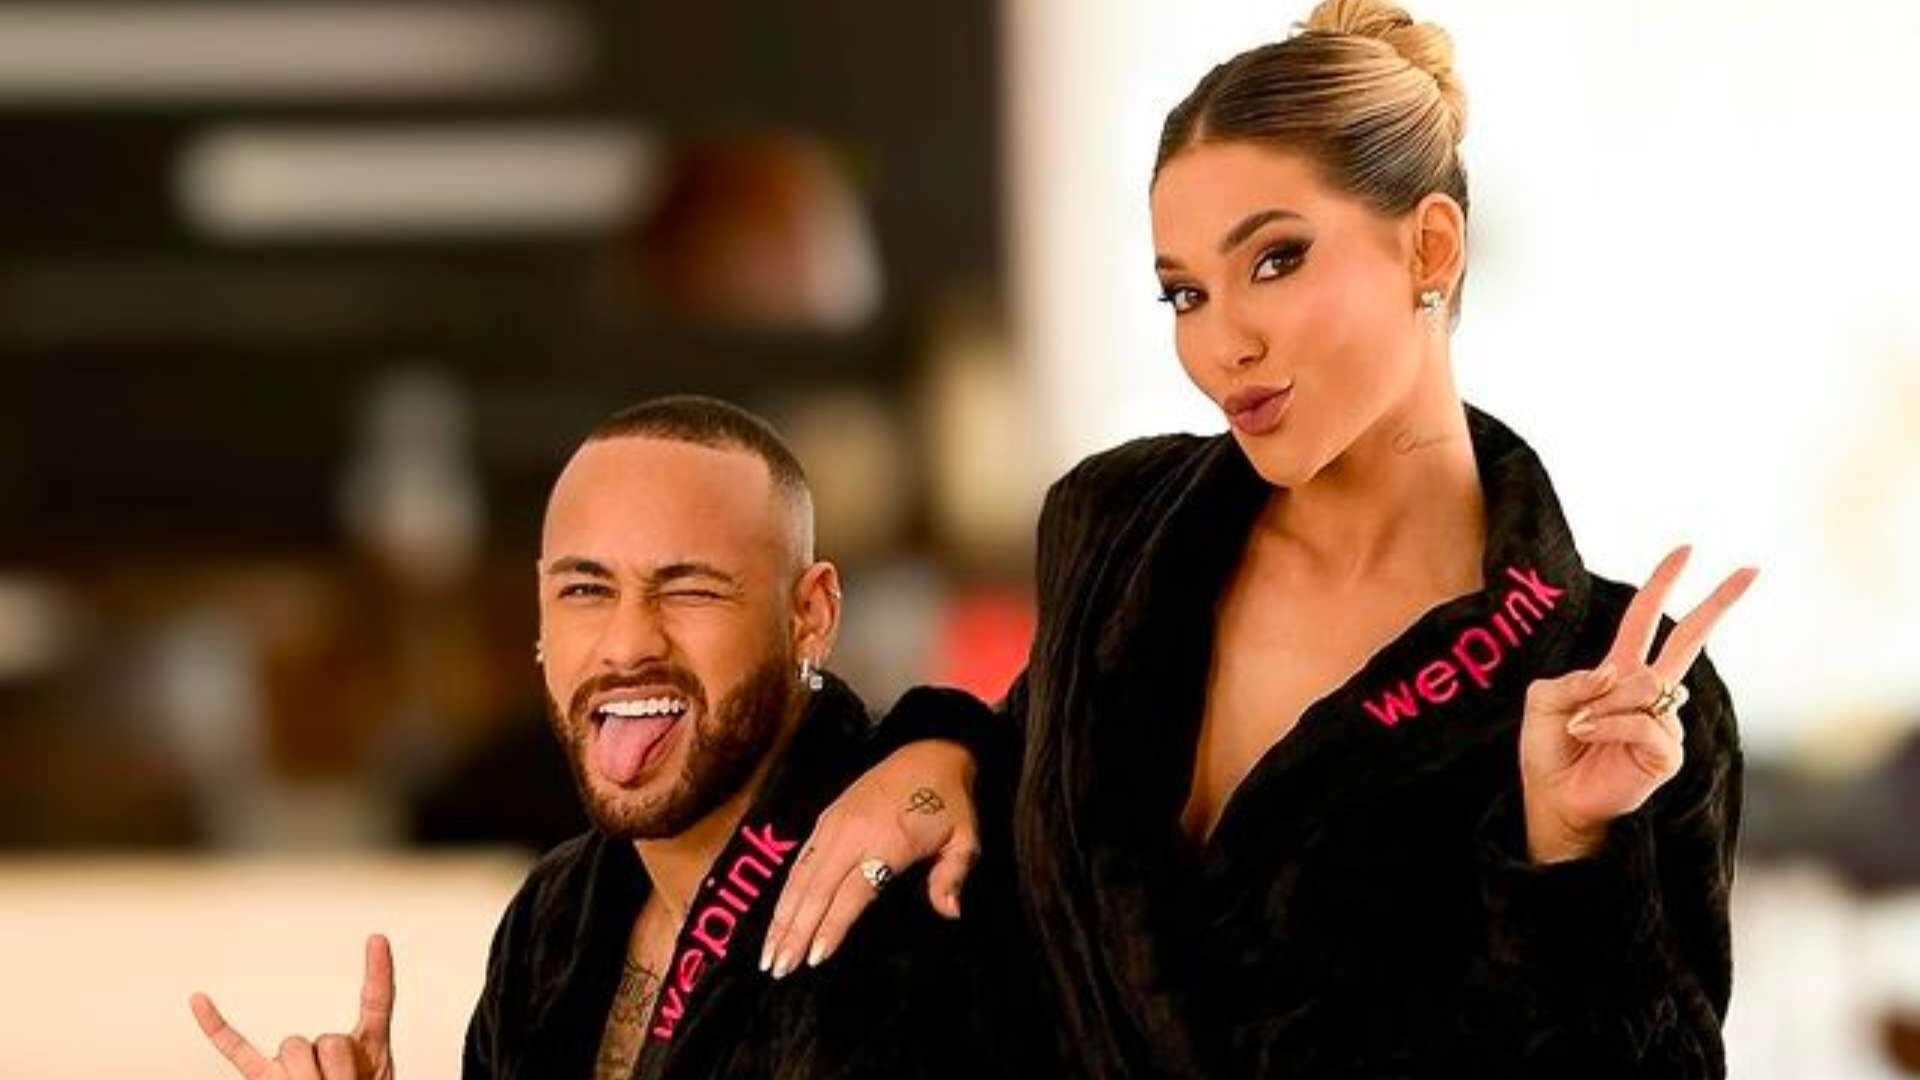 Teve um caso com Neymar antes do Zé Felipe? Virgínia se pronuncia sobre rumores e deixa os fãs chocados - Metropolitana FM